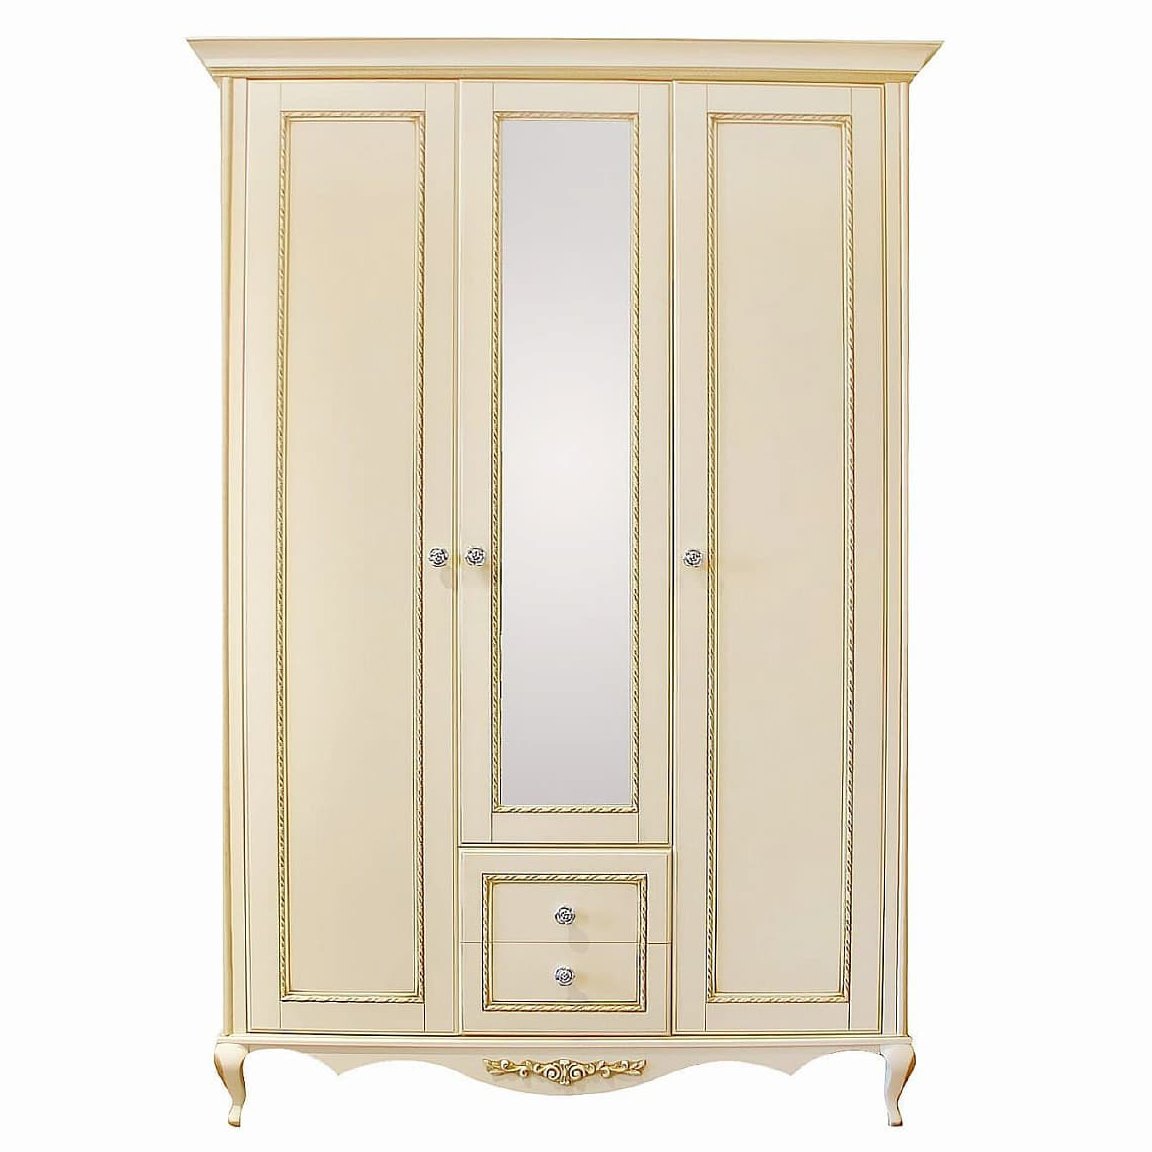 Шкаф платяной Timber Неаполь, 3-х дверный с зеркалом 159x65x227 см цвет: ваниль с золотом (T-523)T-523